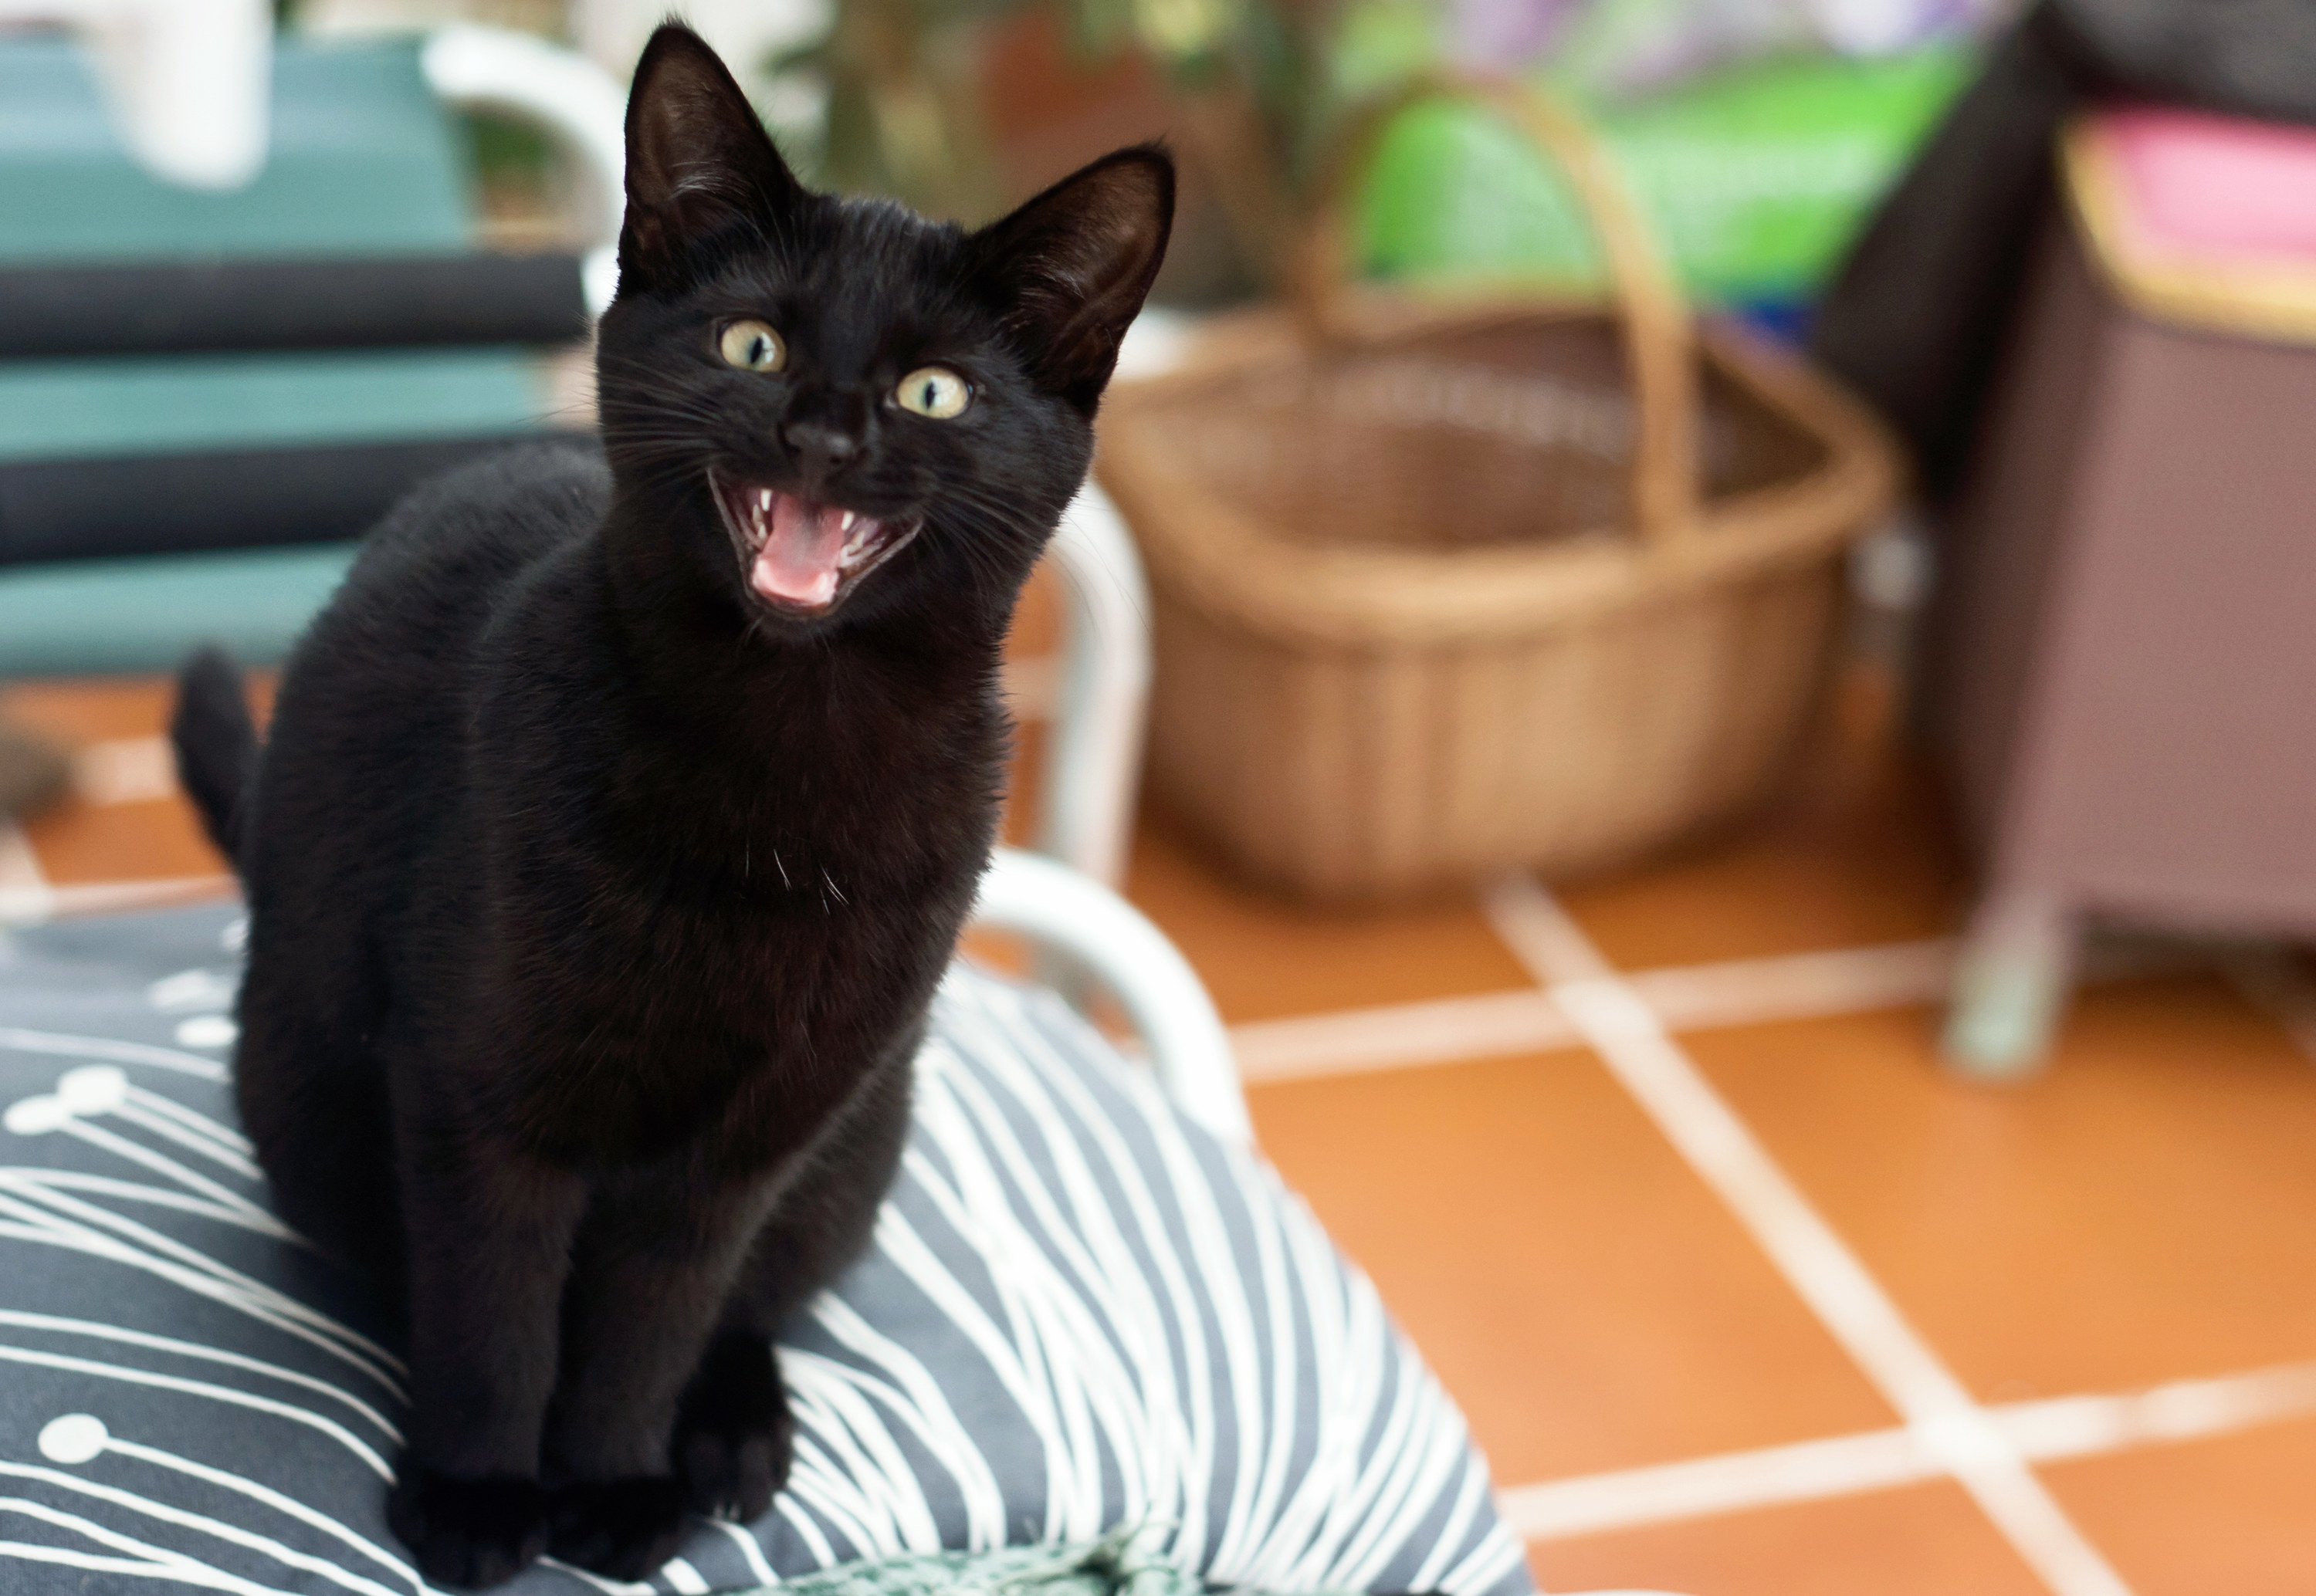 a black cat hissing